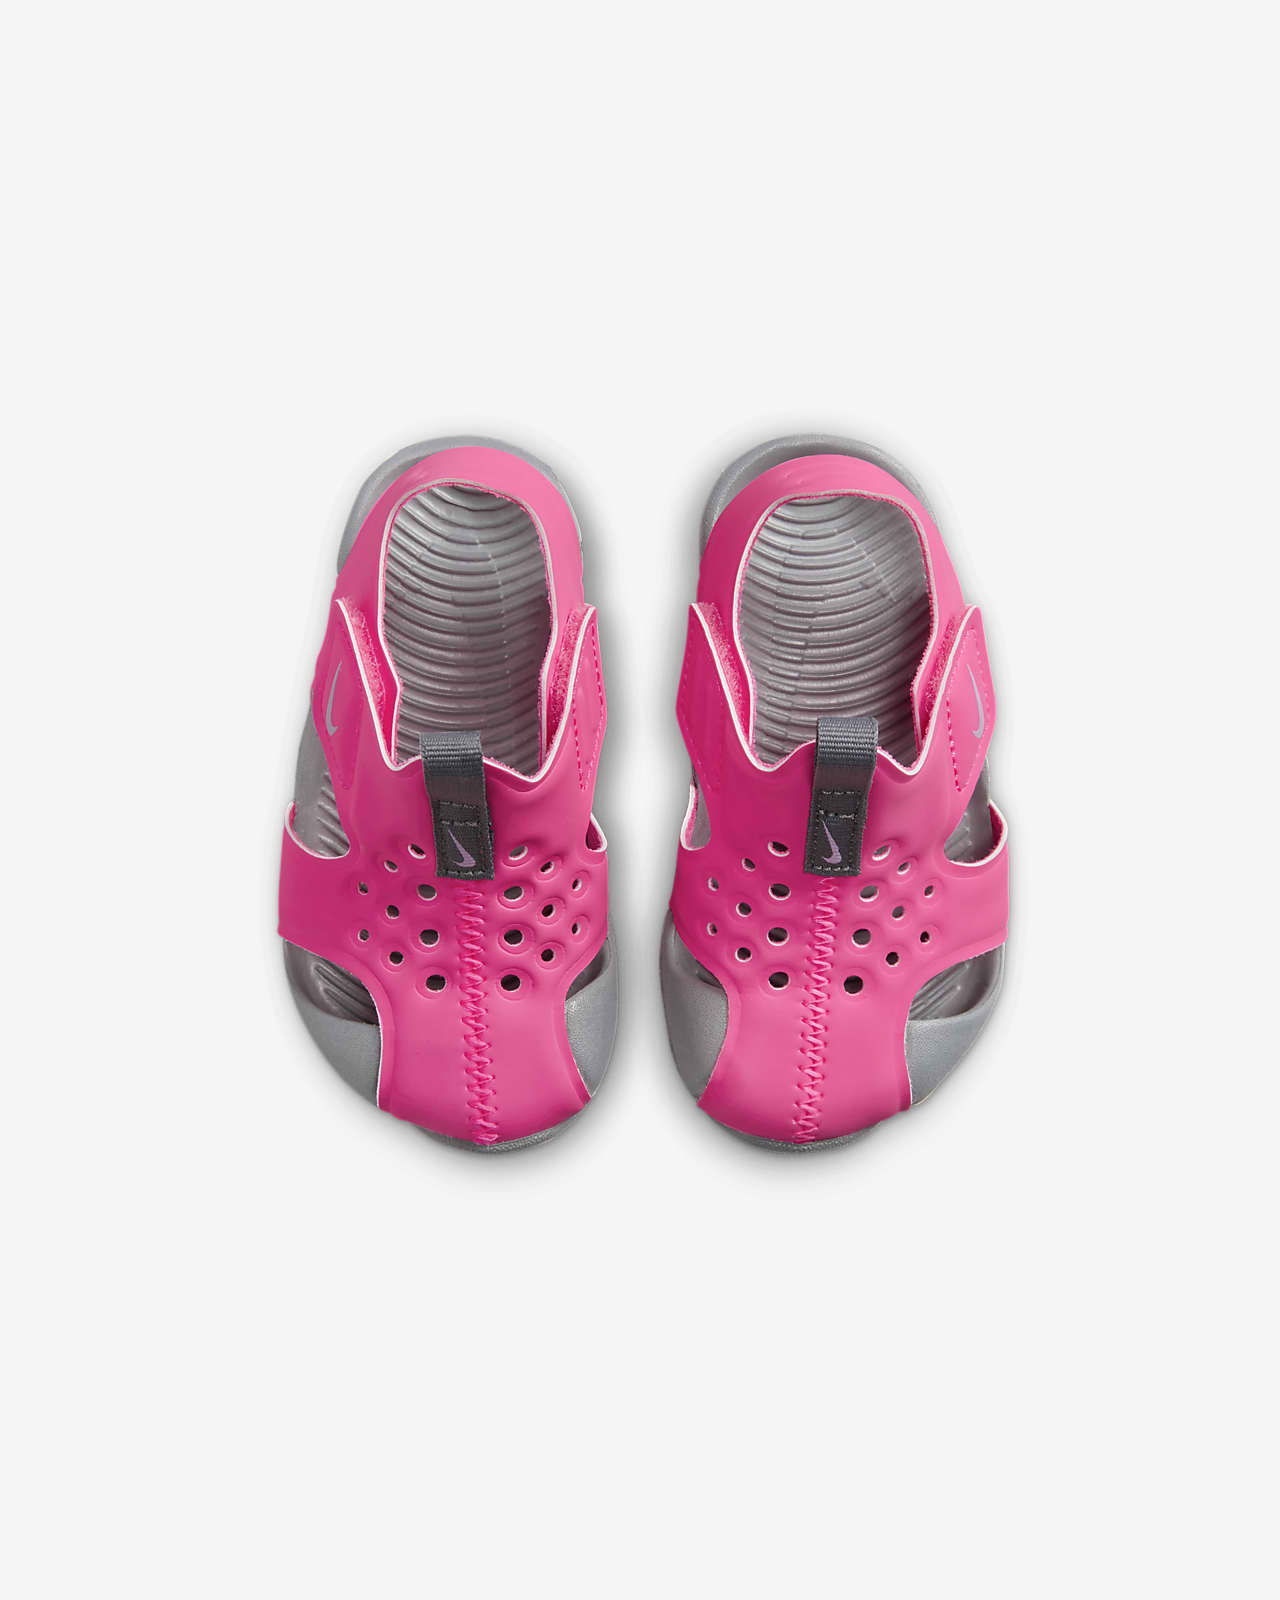 at fortsætte emulering sukker Nike Sunray Protect 2-sandal til babyer/småbørn. Nike DK